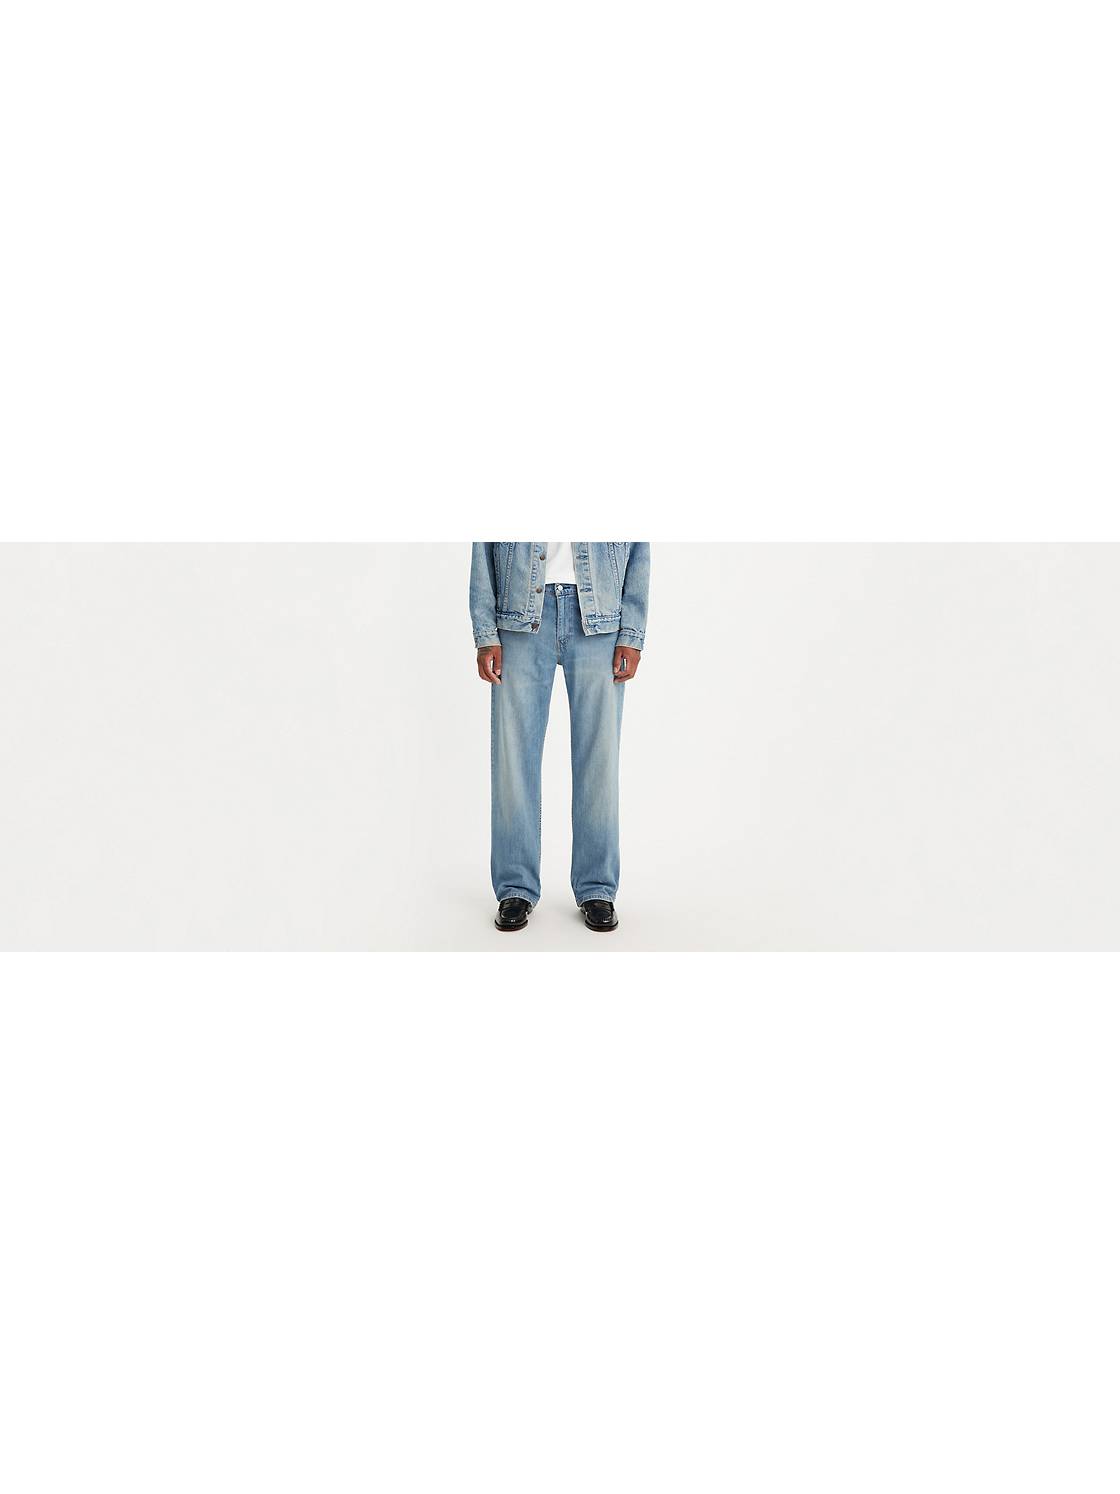 Men's Baggy Jeans: Shop Men's Loose Fit Jeans